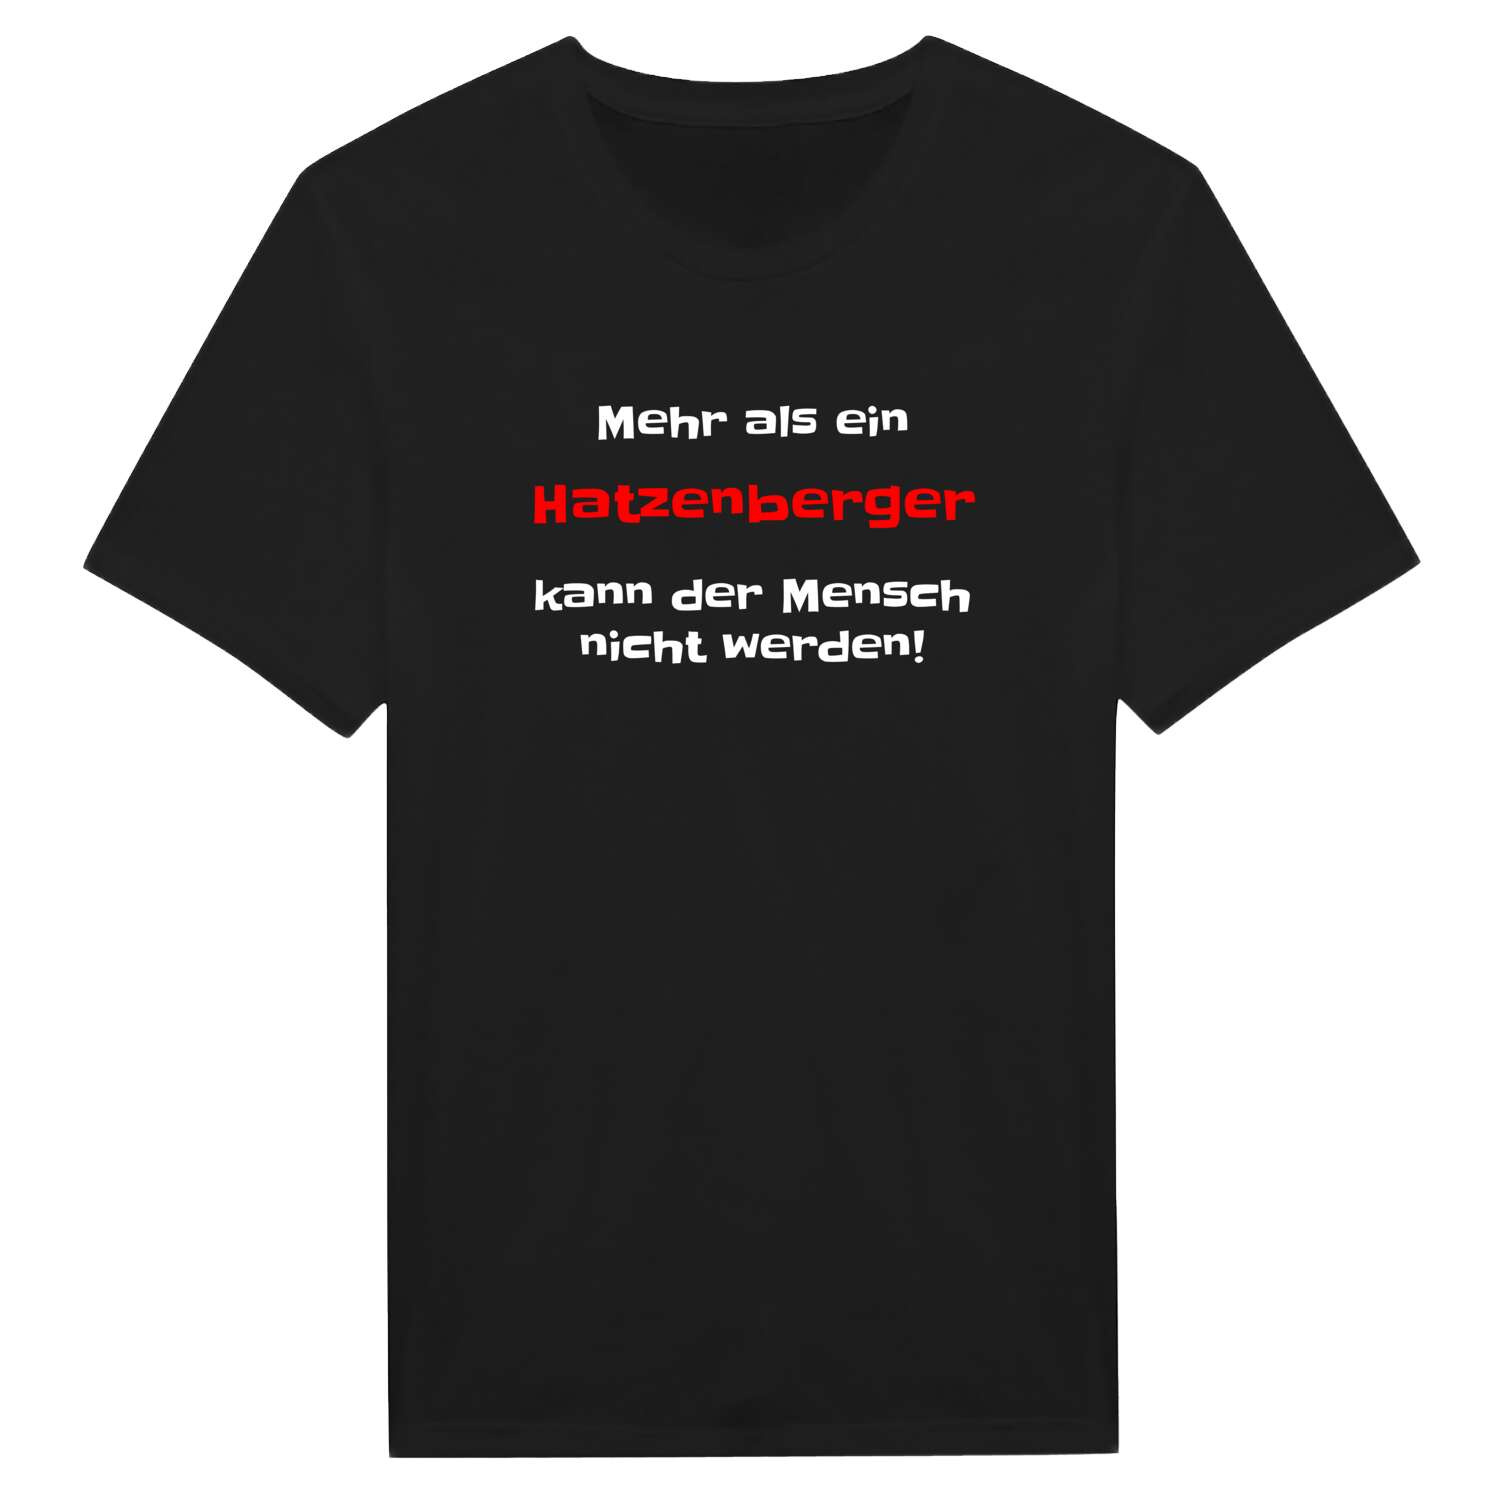 Hatzenberg T-Shirt »Mehr als ein«